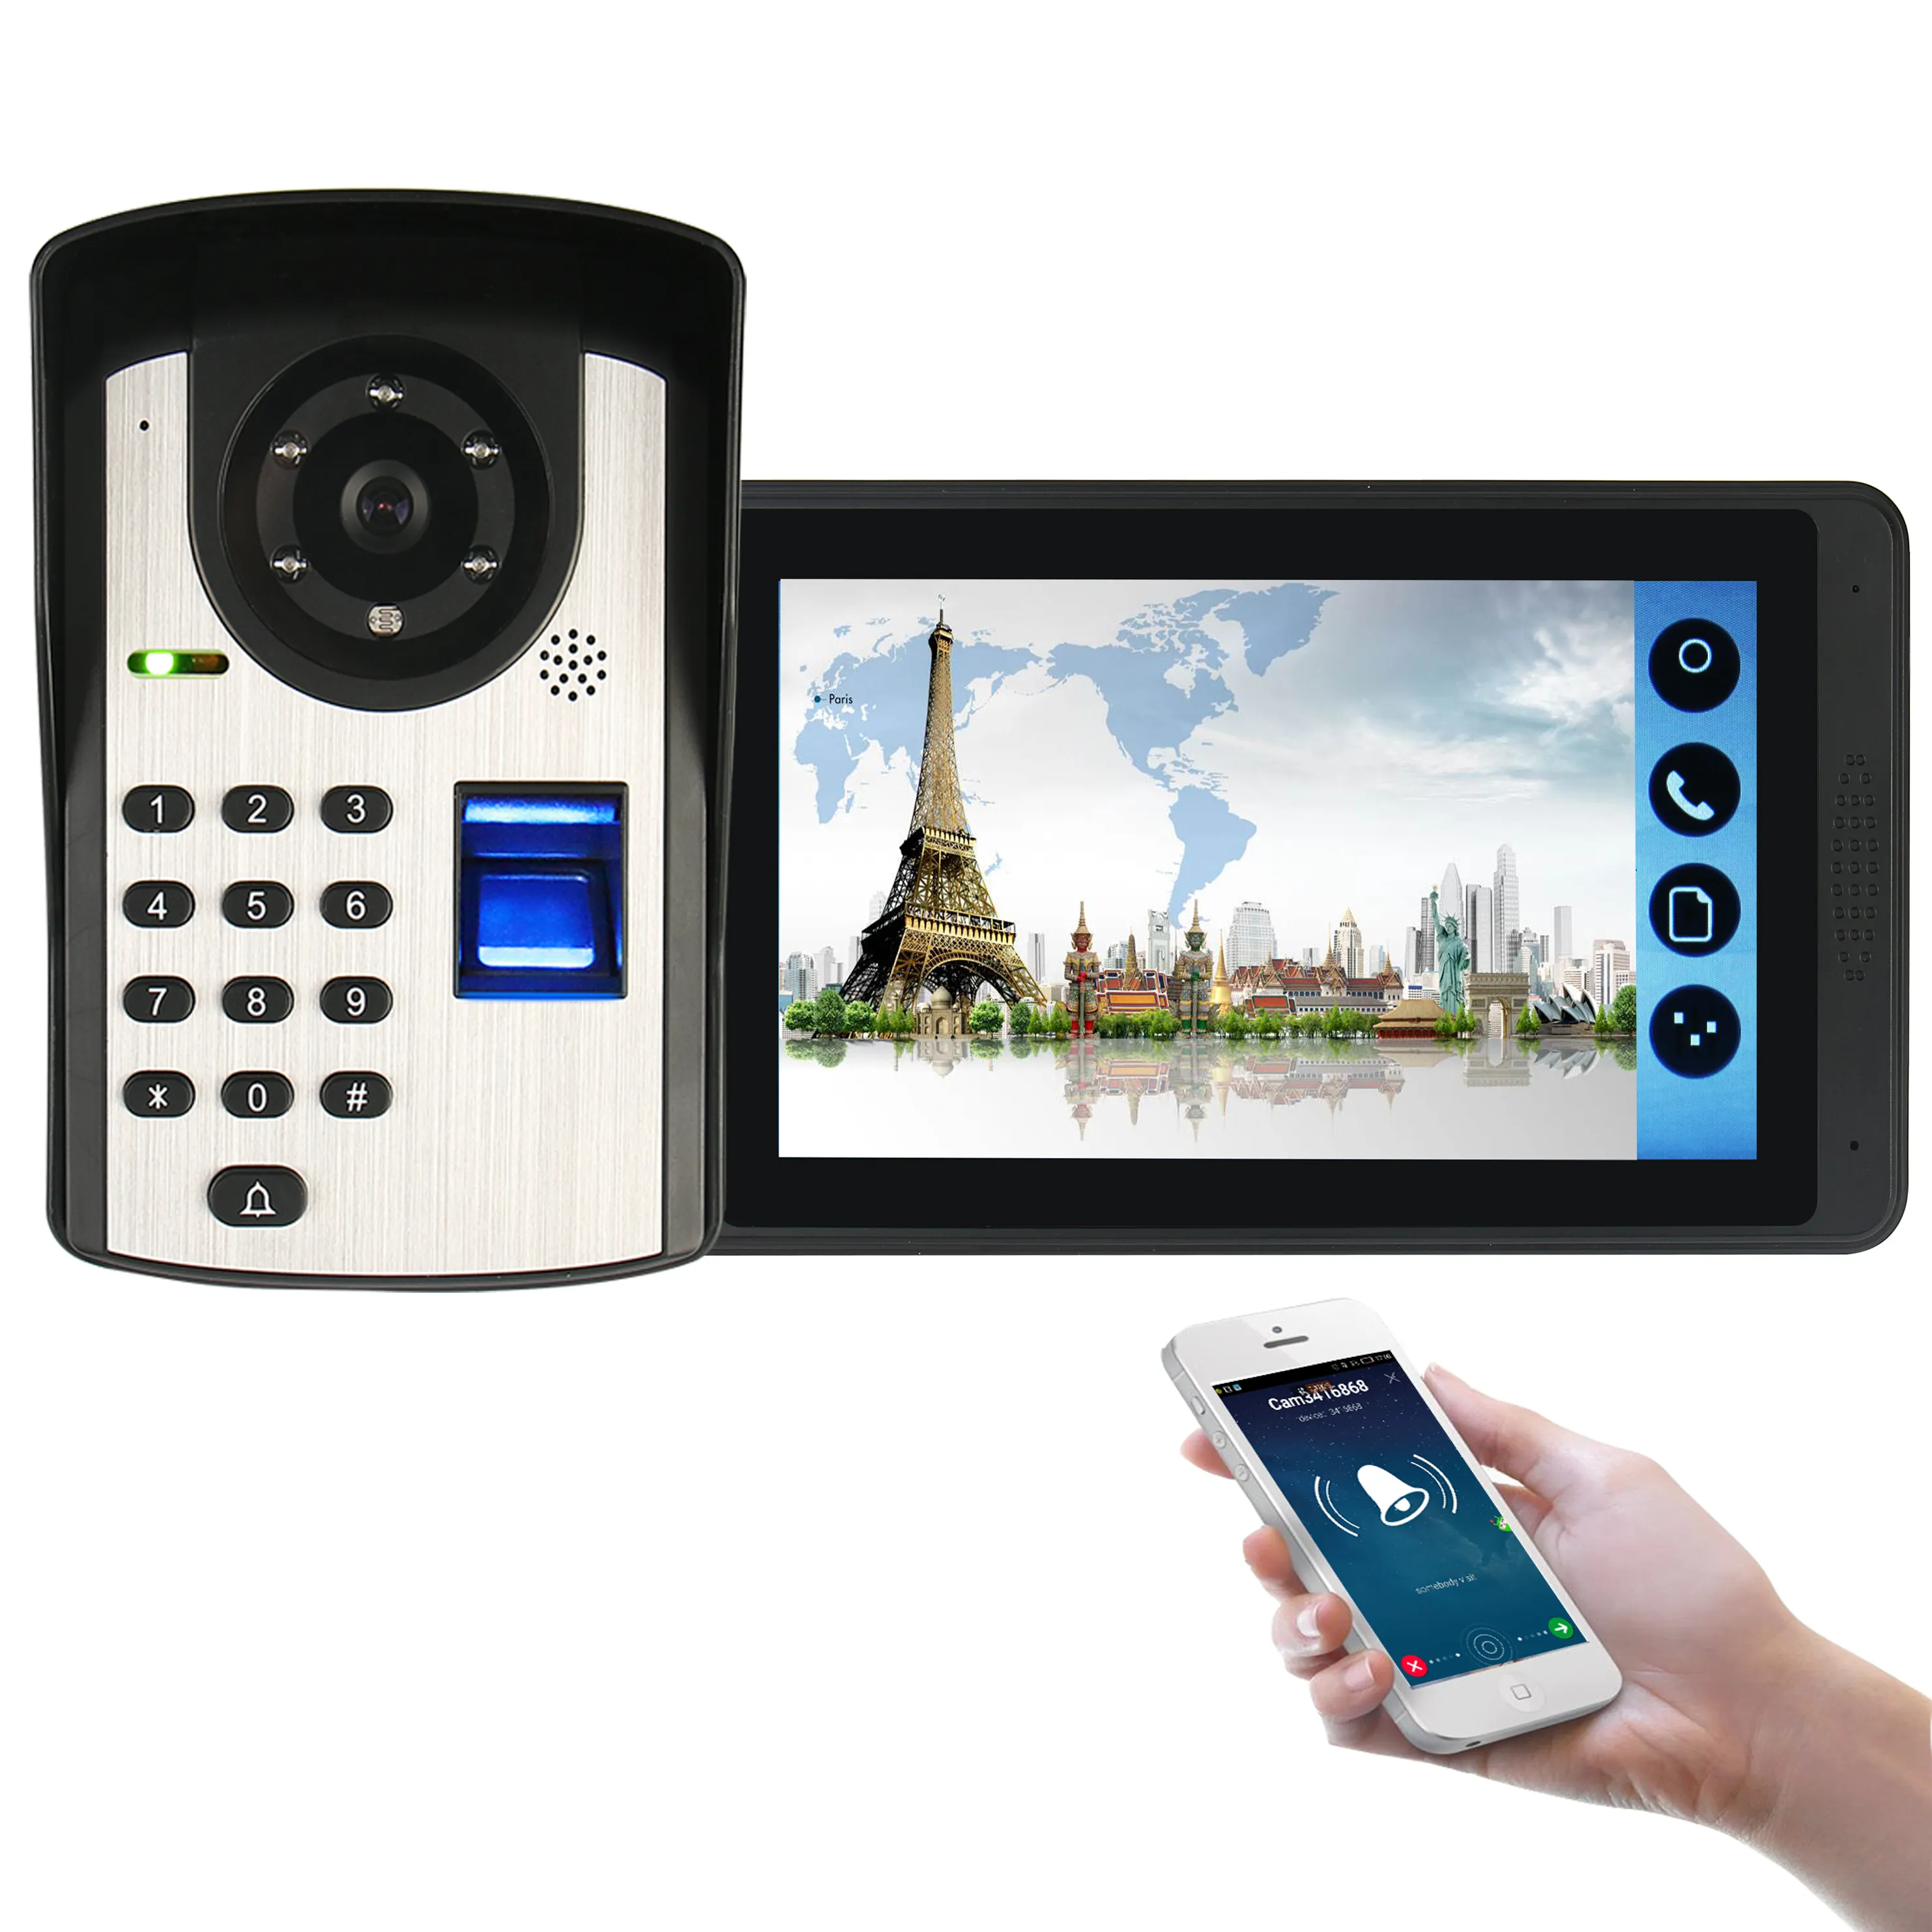 Смарт-домофон с дистанционным управлением через приложение/отпечатком пальца/кодами/разблокировкой/видеозвонок, водонепроницаемая наружная камера, внутренний ЖК-монитор